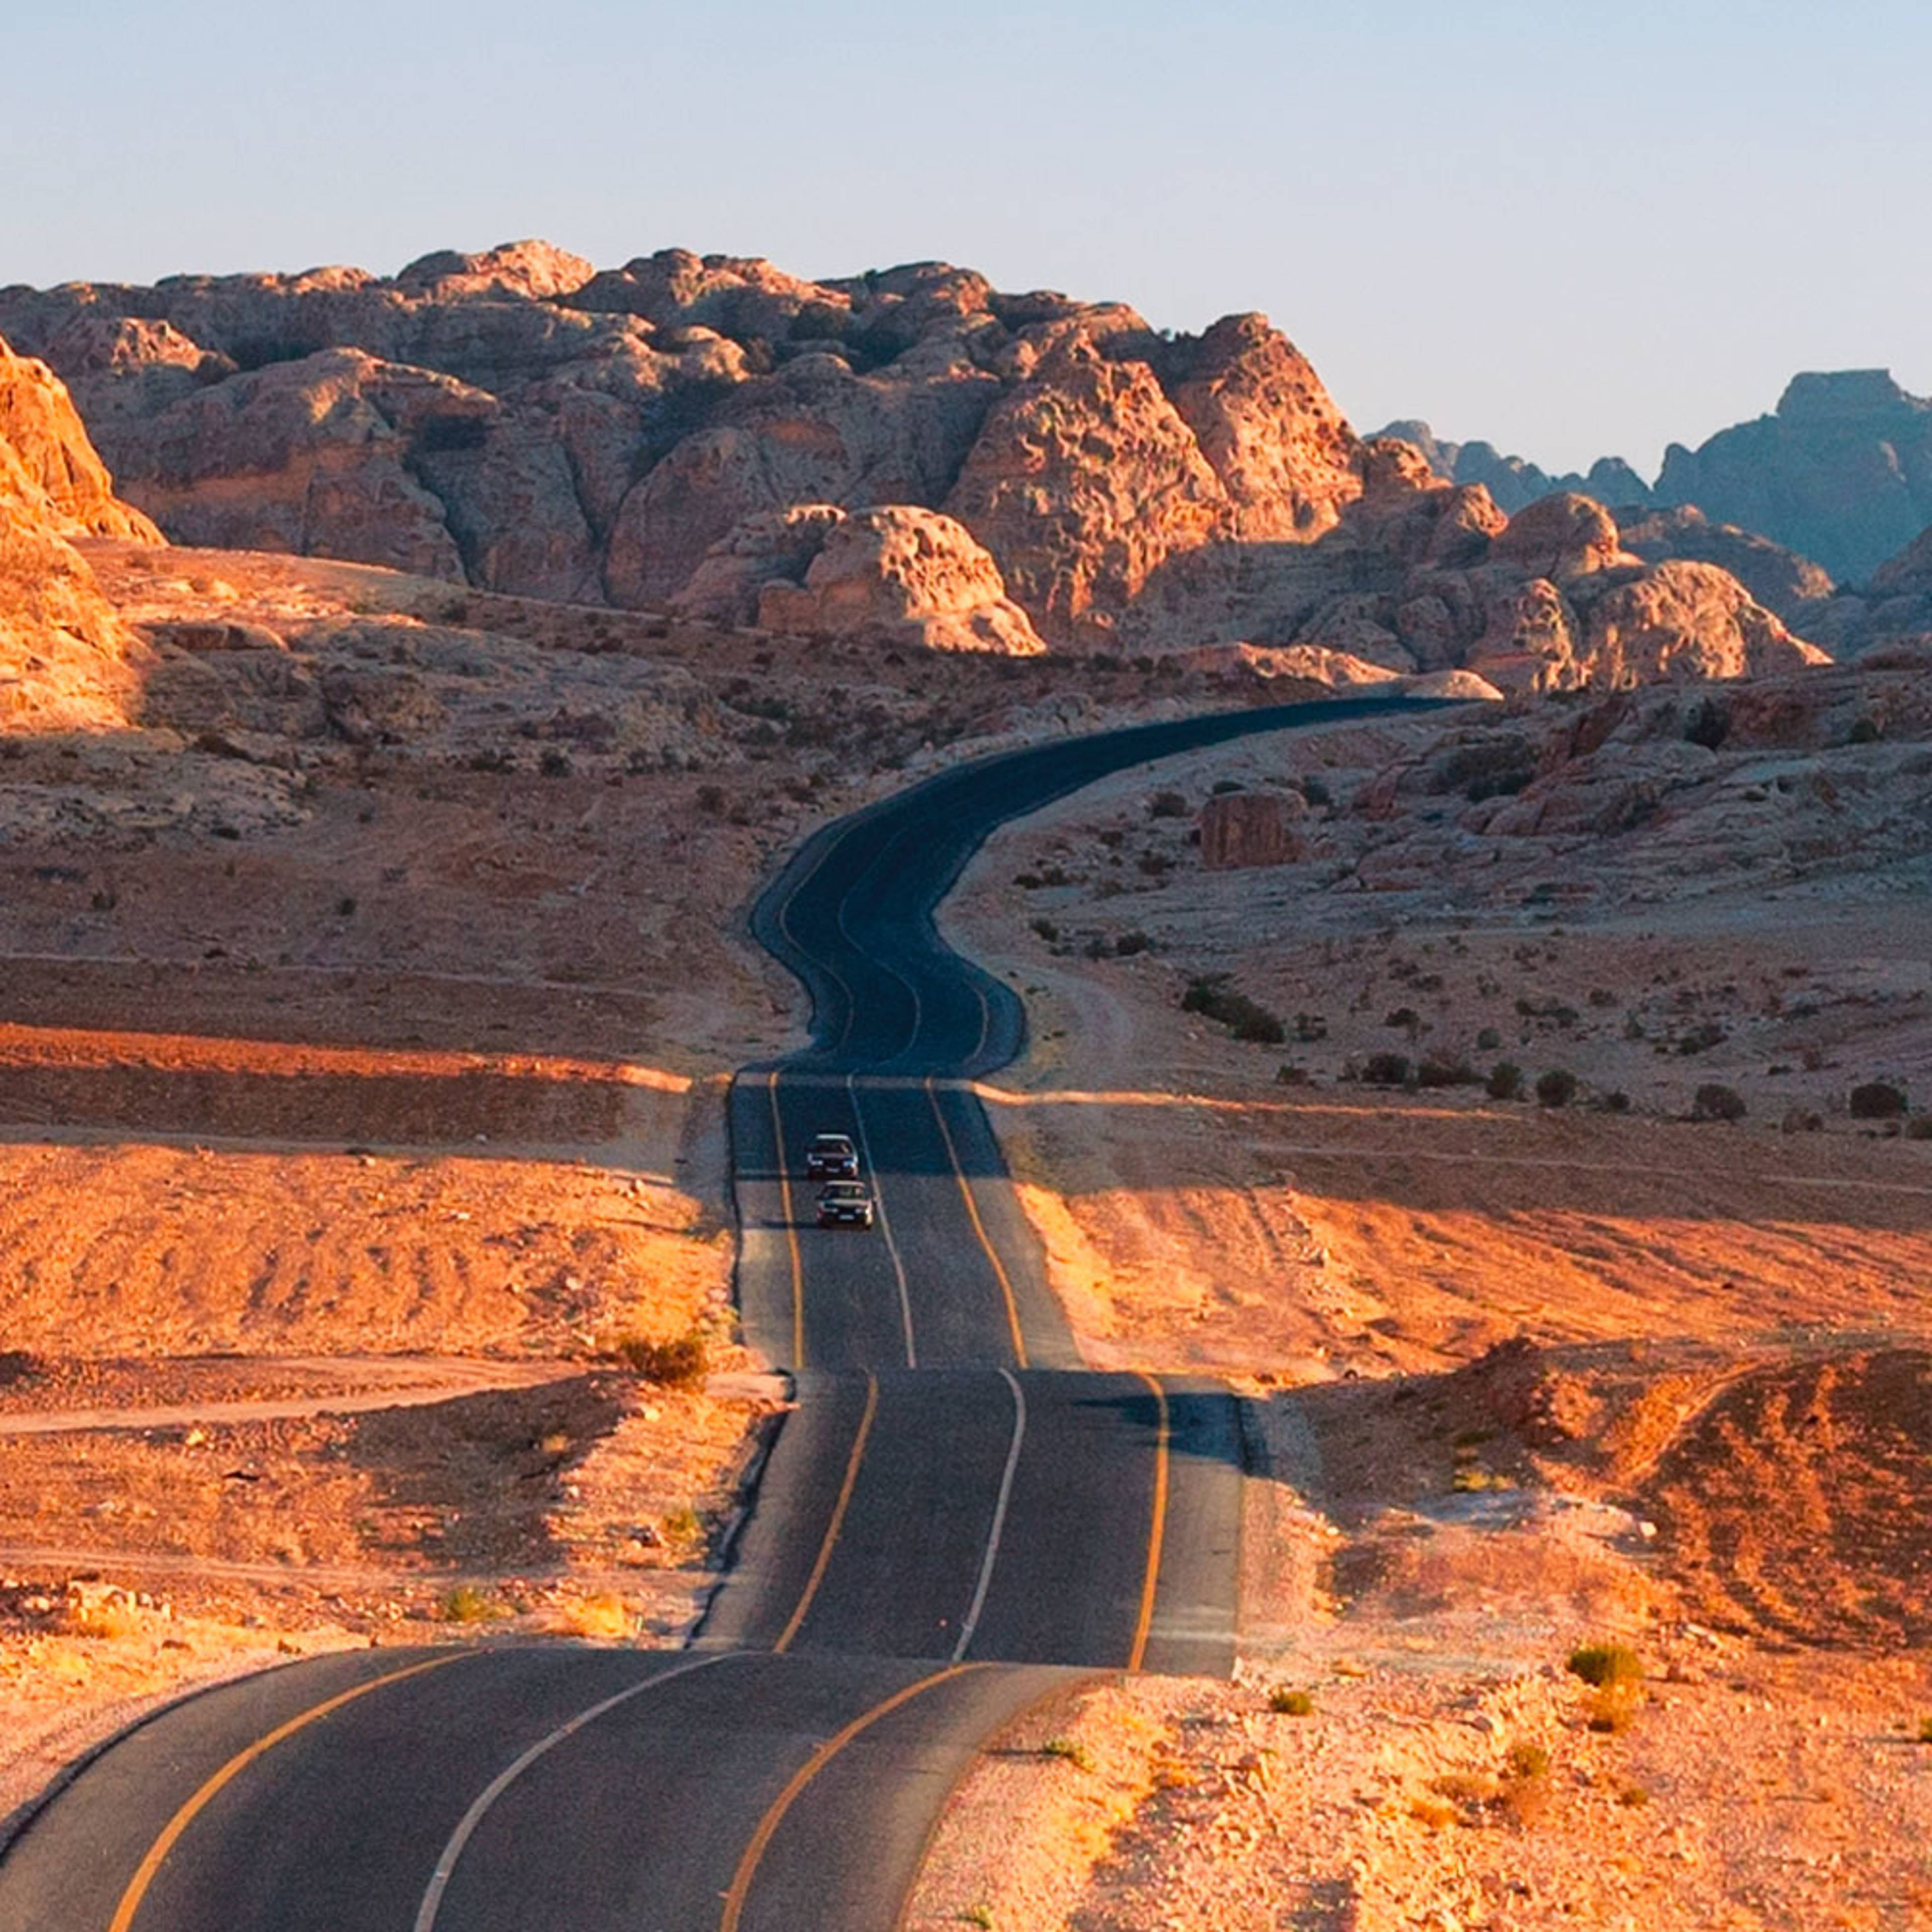 Votre voyage en autotour en Jordanie 100% sur mesure